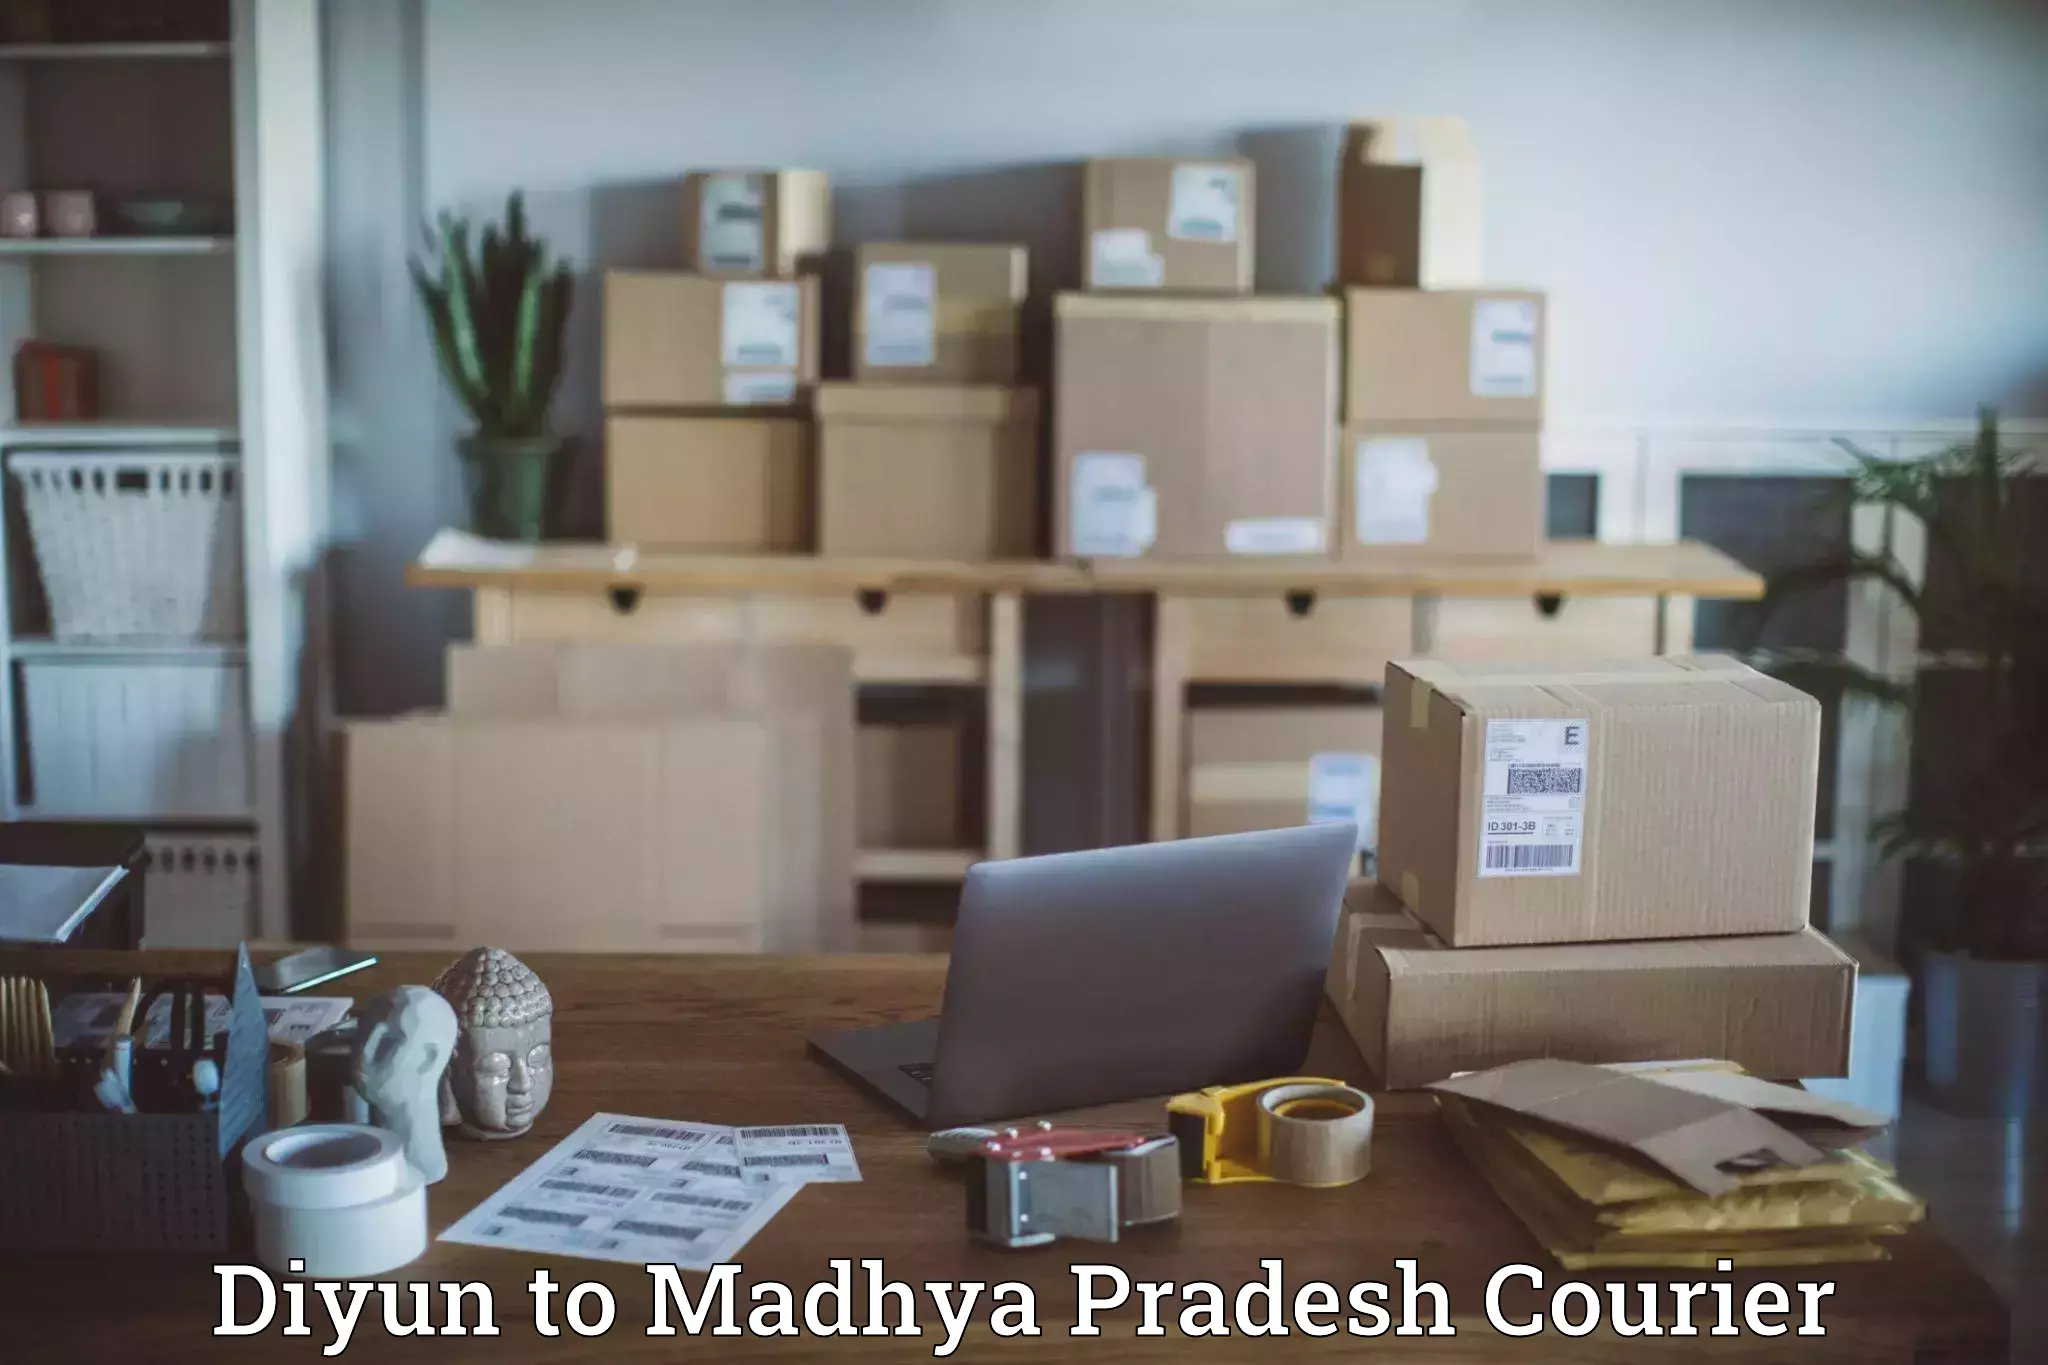 Efficient parcel service Diyun to Pachore